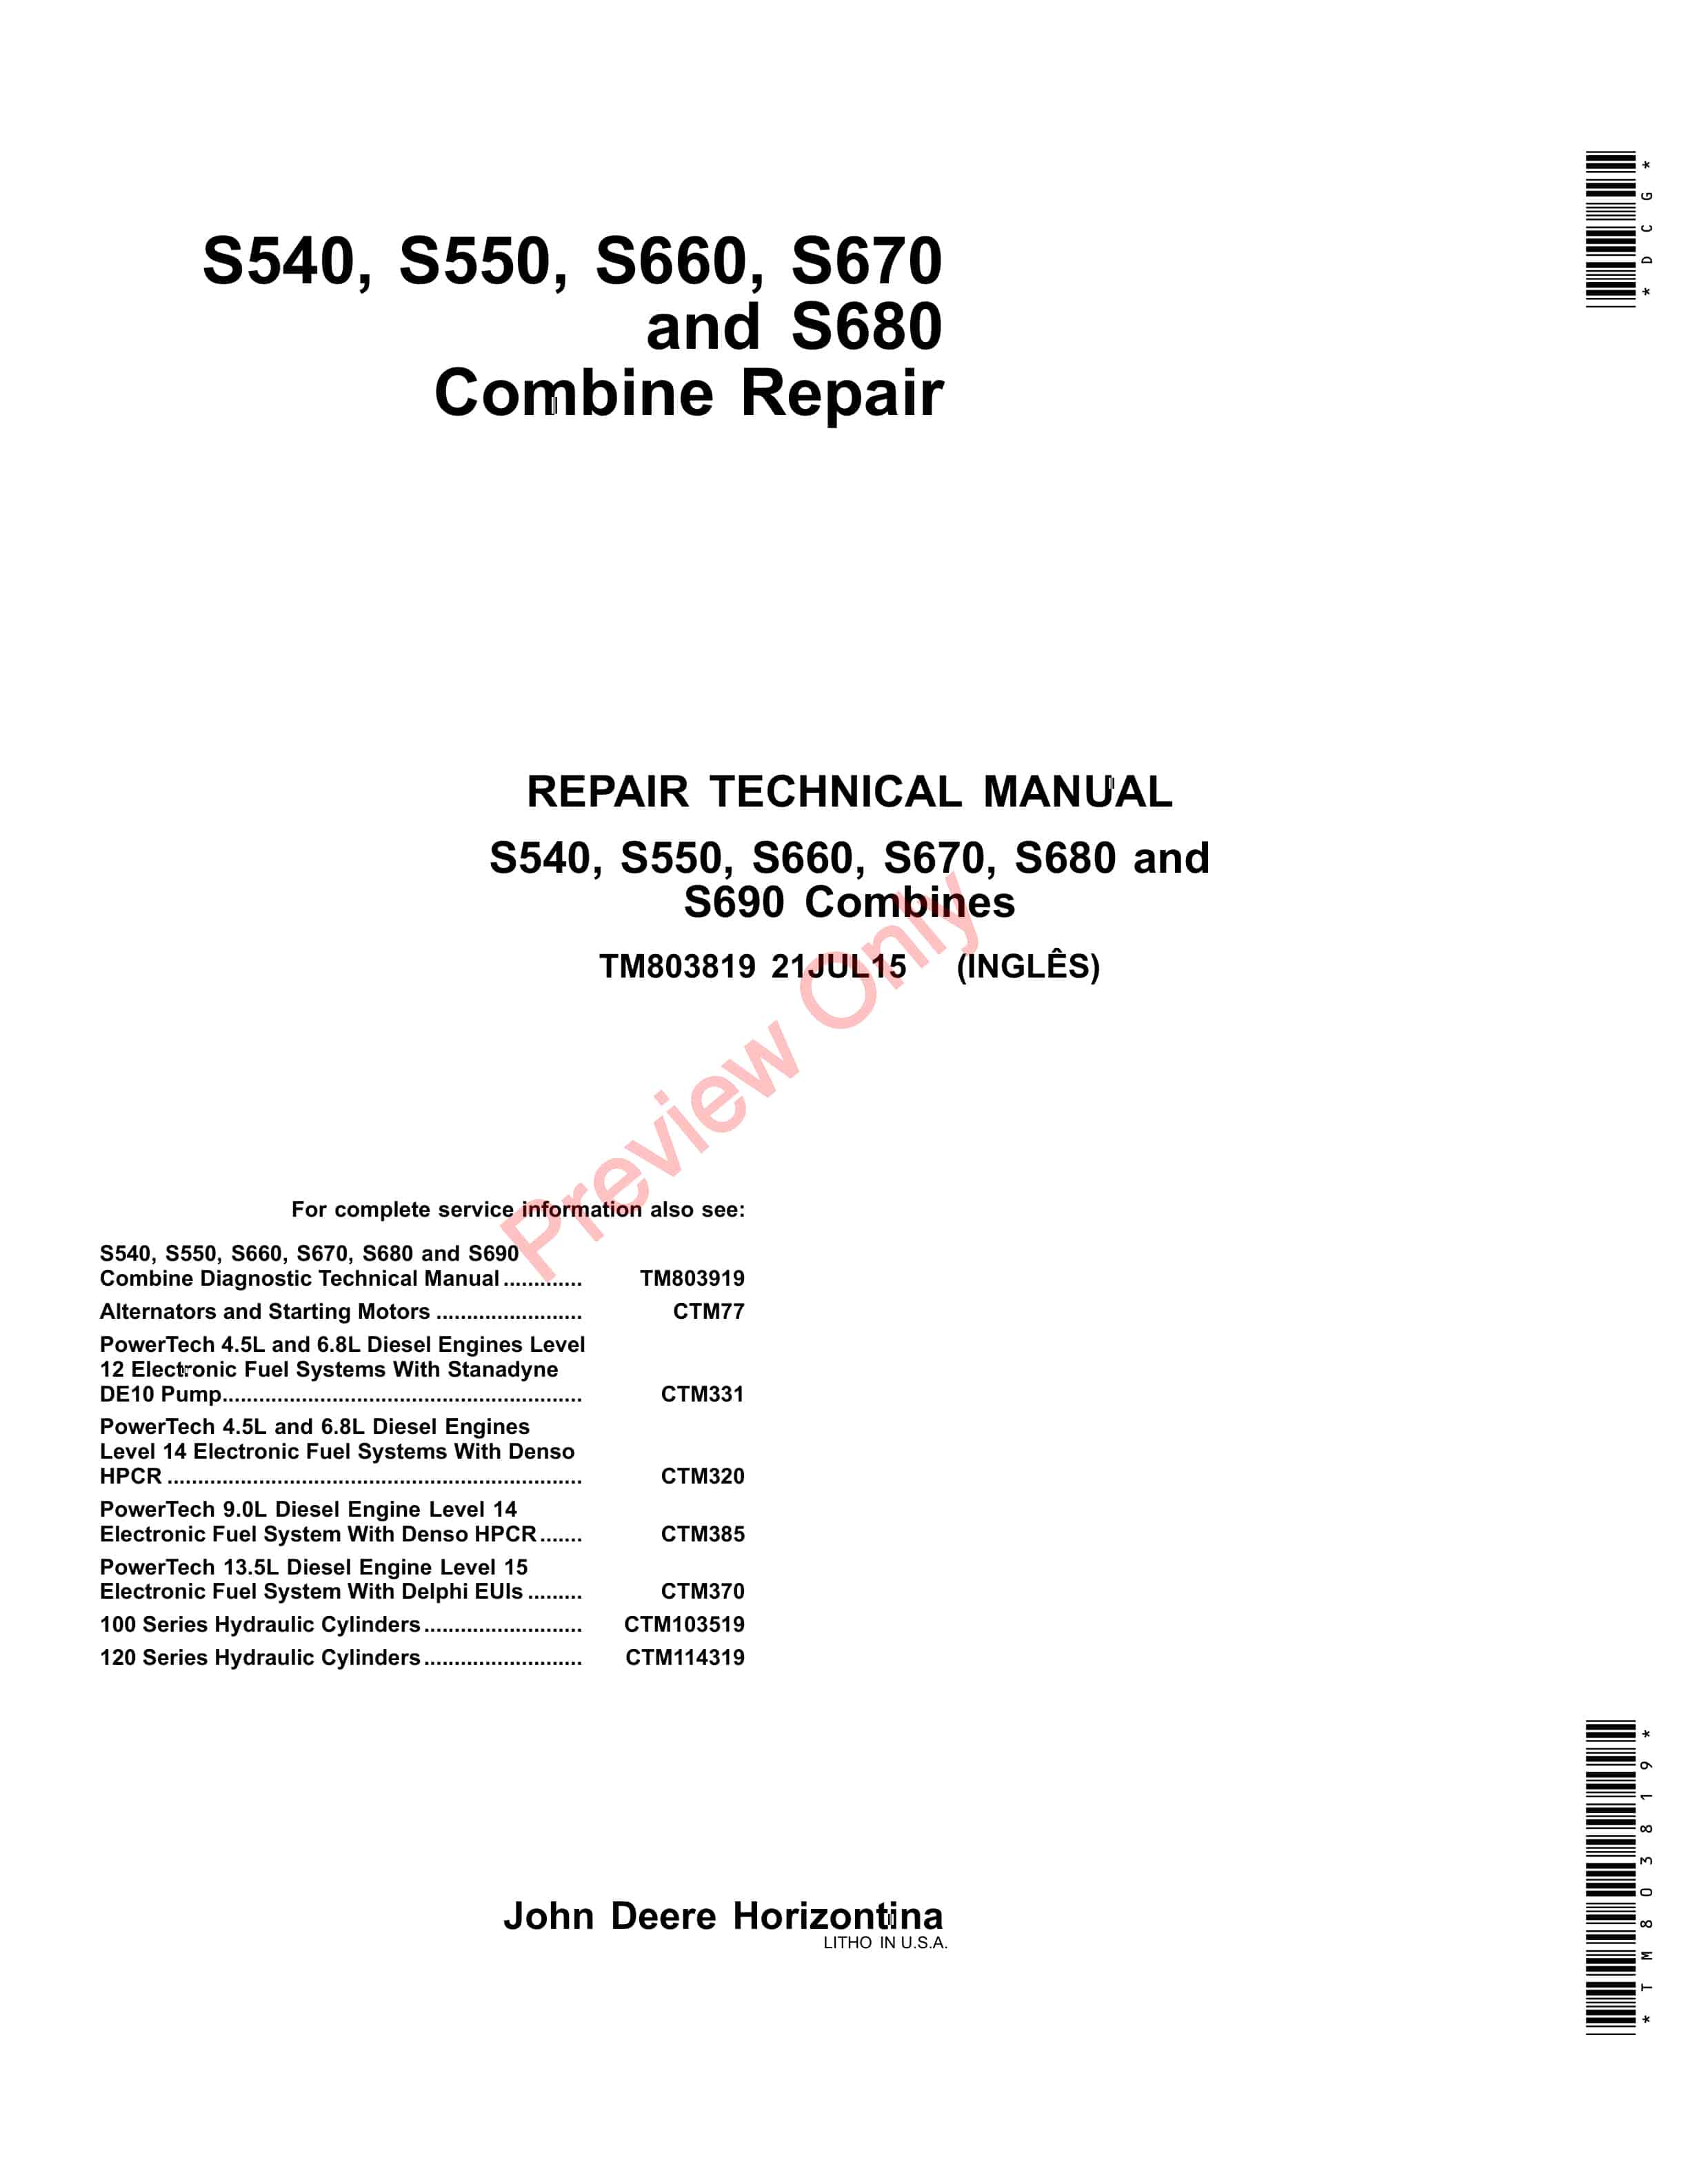 John Deere S540 S550 S660 S670 and S680 Combine Technical Manual TM803819 21JUL15 1